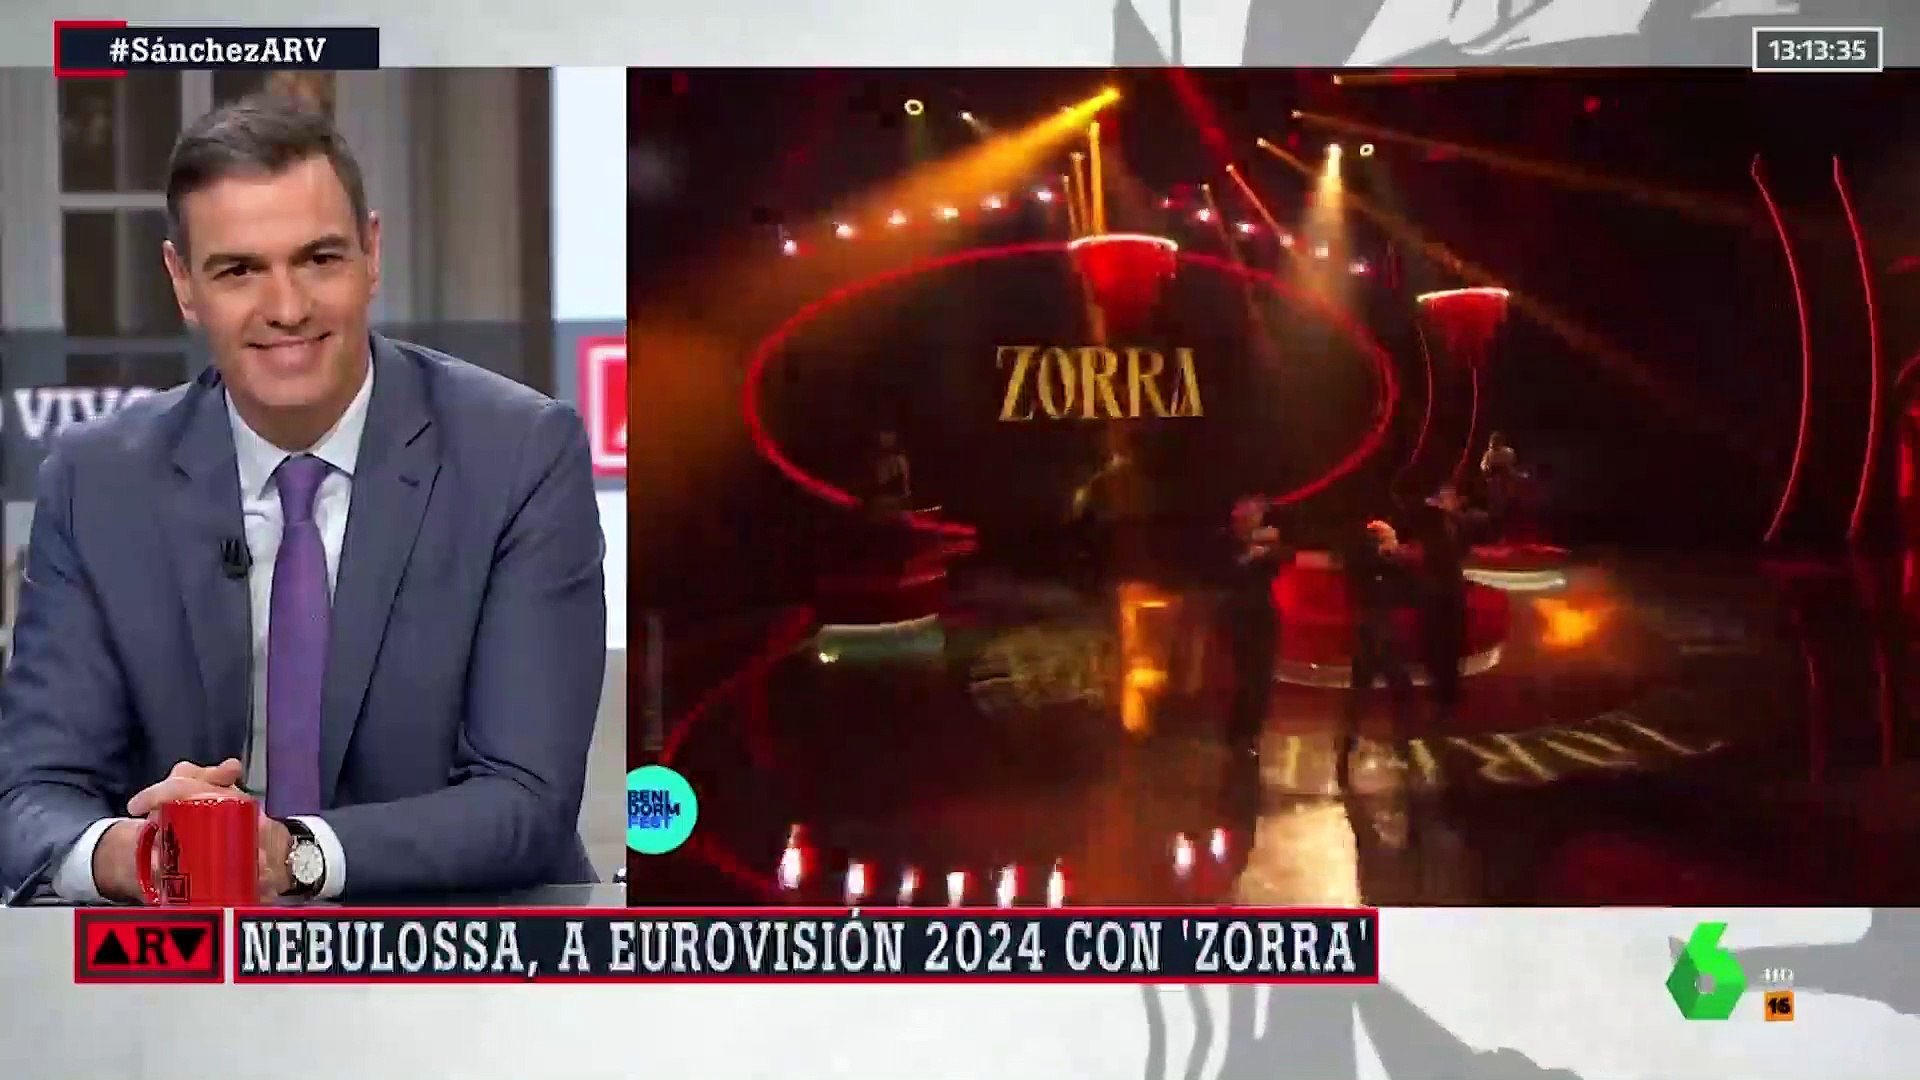 Letra de Zorra la canción de Nebulossa que llevamos a Eurovisión